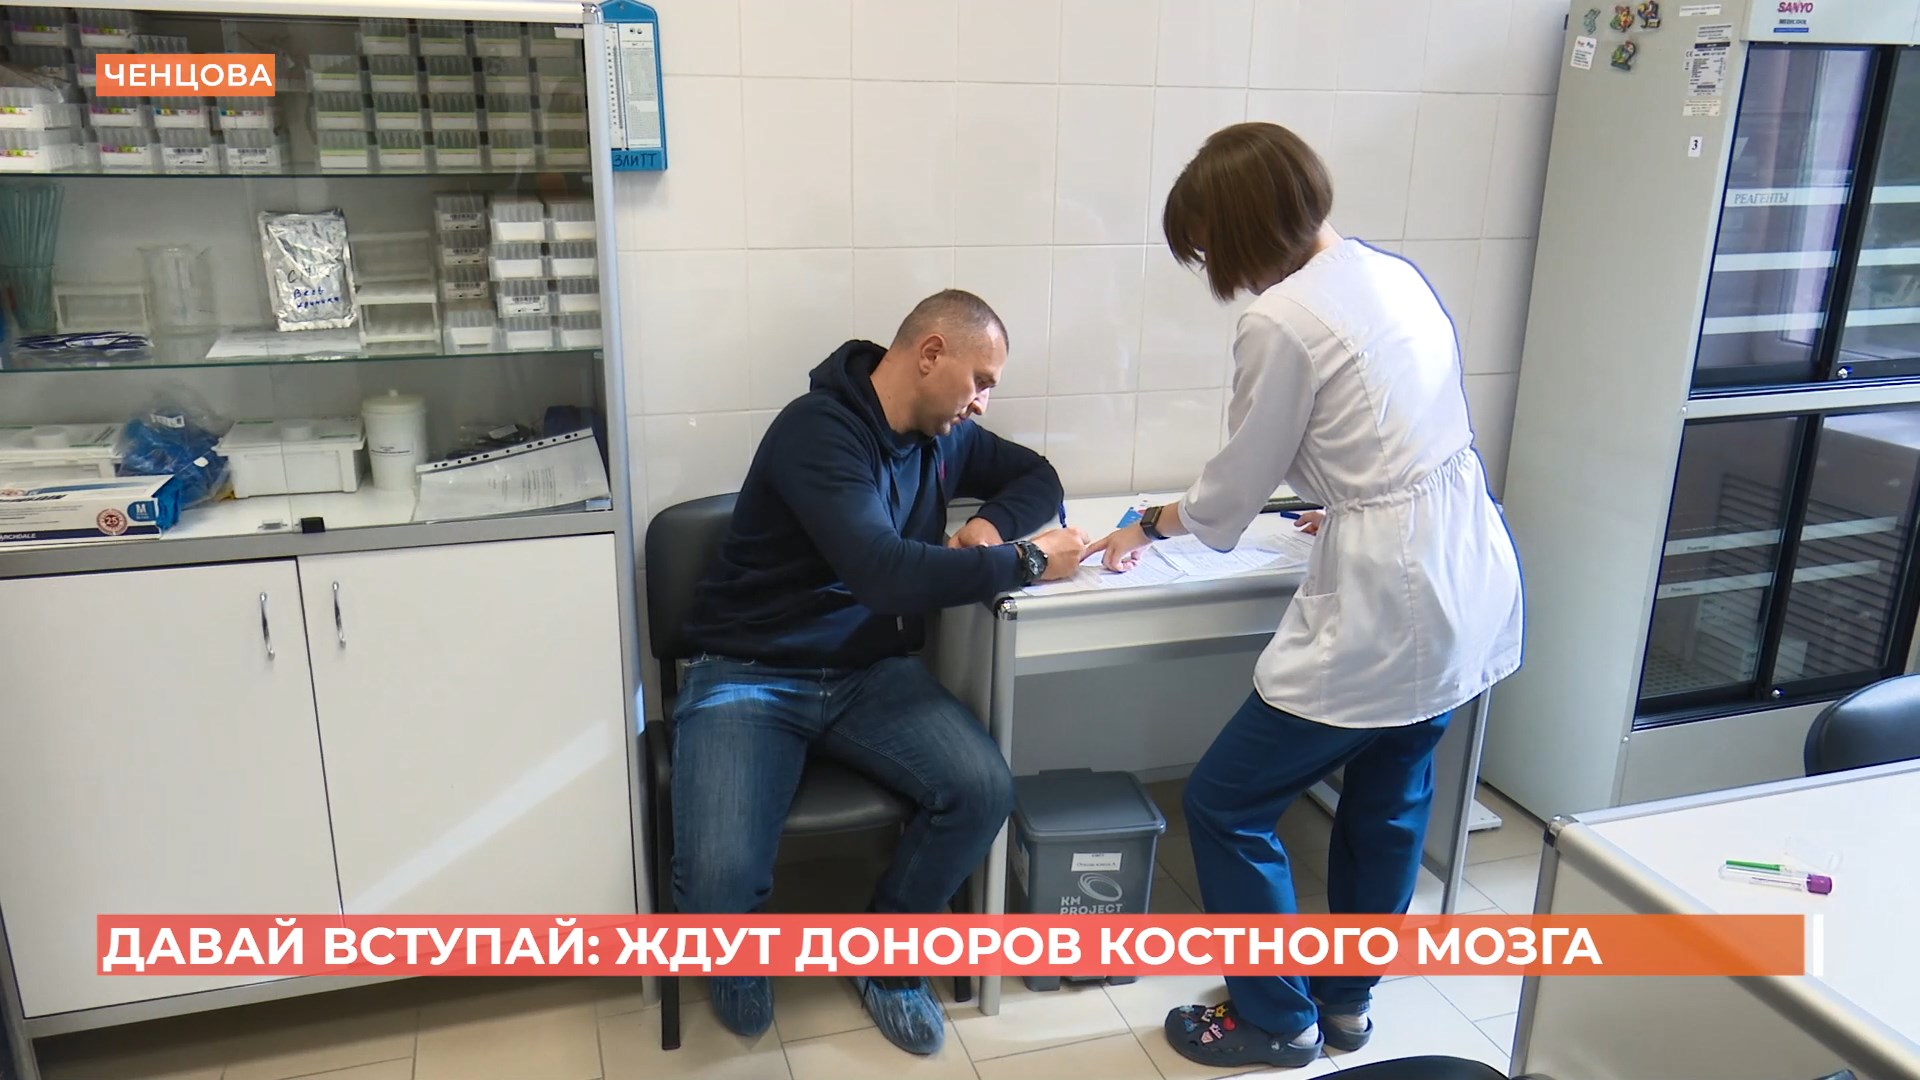 Всероссийский марафон донорства костного мозга «Давай вступай» проводится в Ростове